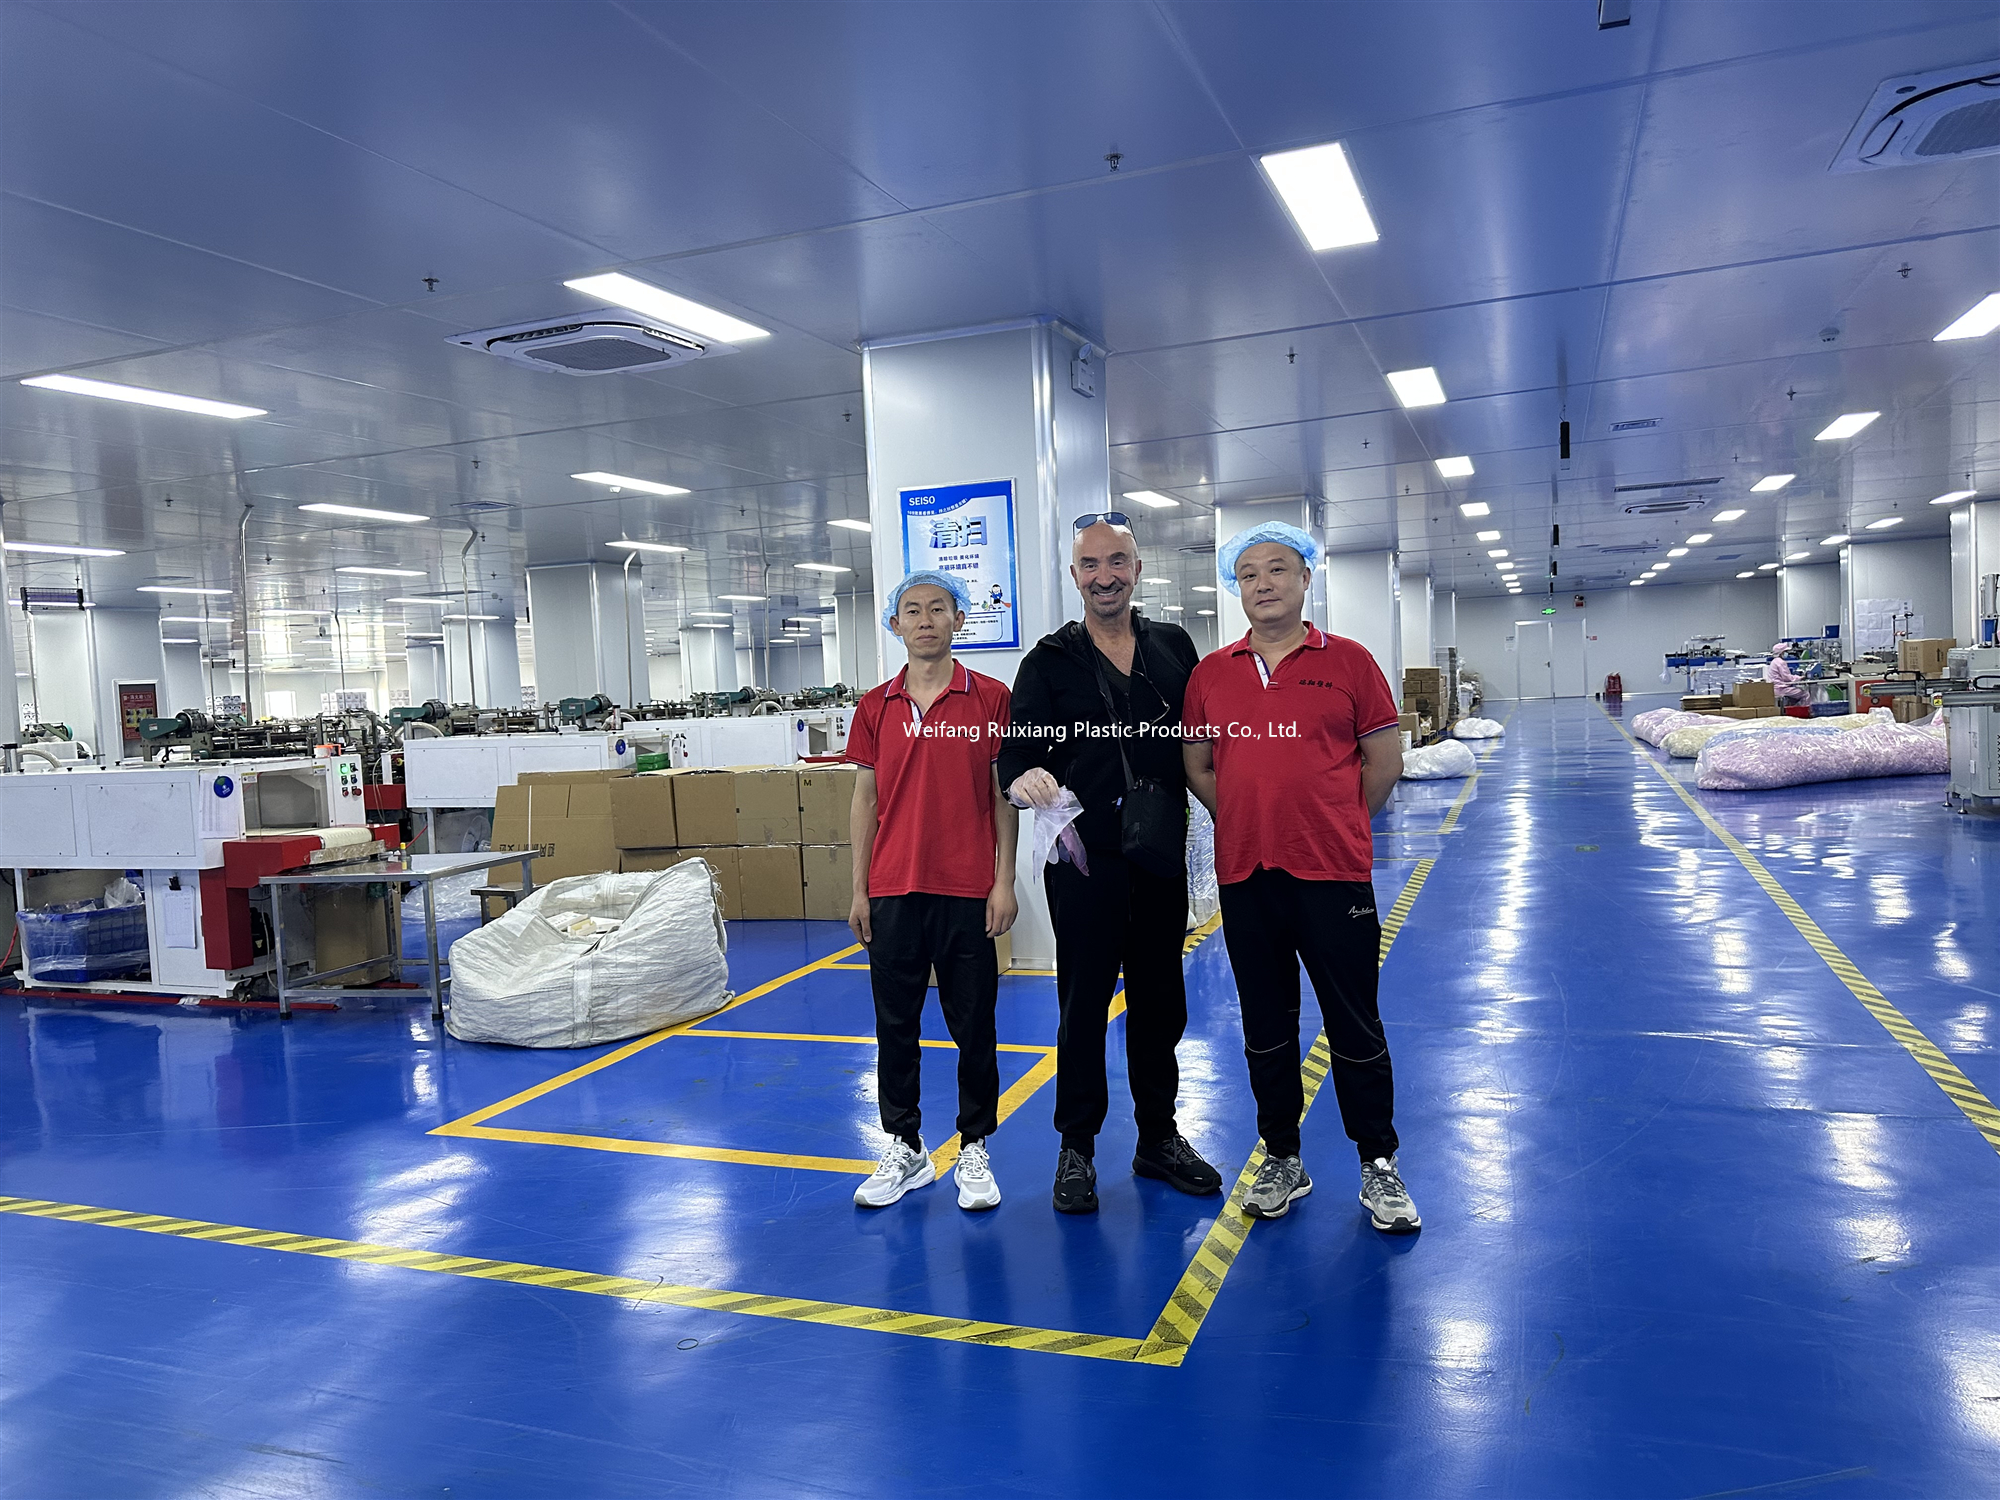 Naša fabrika ugošćuje strane klijente koji dolaze da upoznaju naše proizvodne procese i unaprede svoja poslovna partnerstva